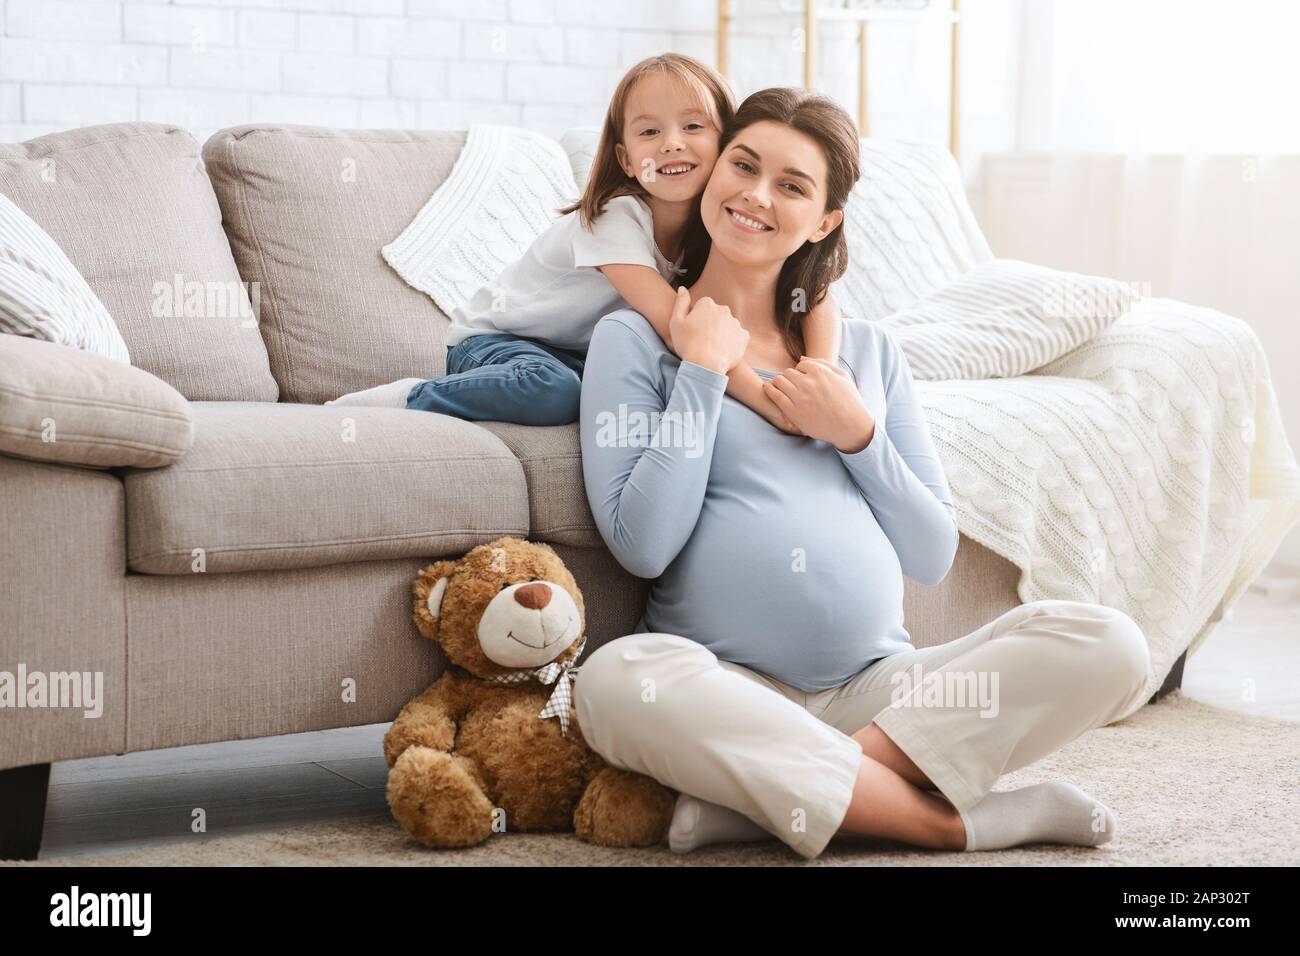 Lächelnd kleine Tochter umarmte ihre Mutter glücklich Schwanger Stockfoto